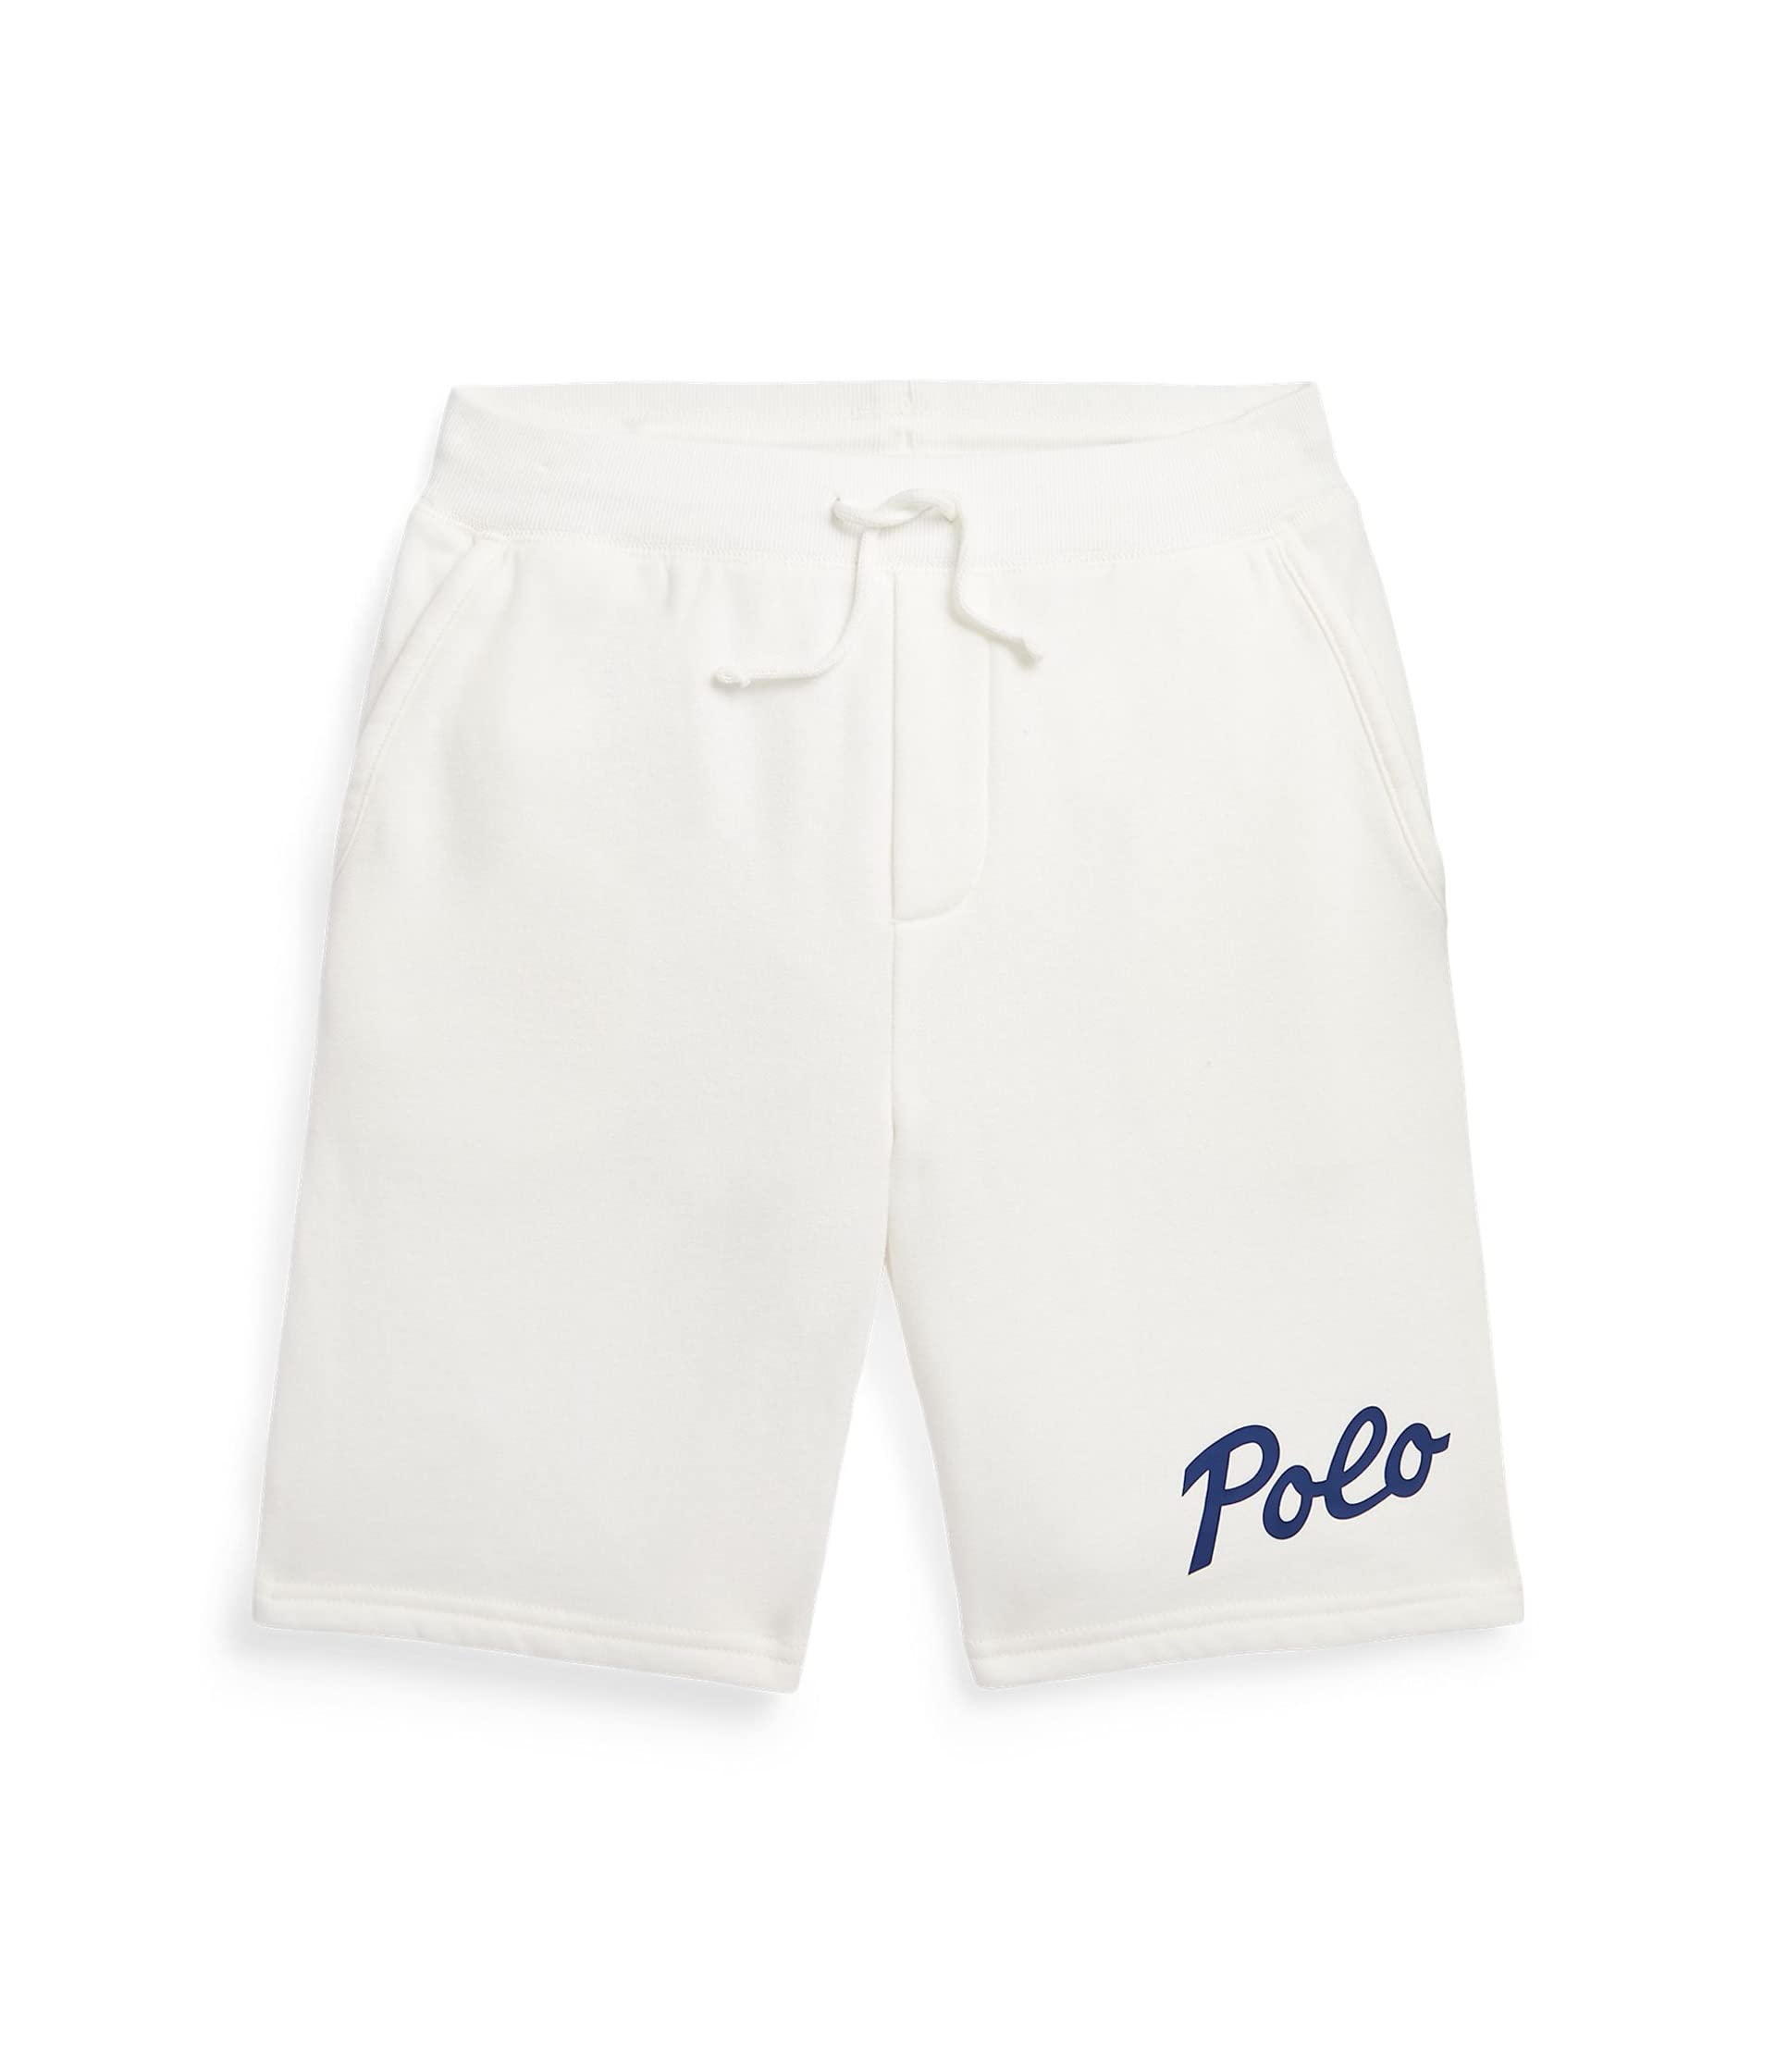 Флисовые шорты с логотипом (для больших детей) Polo Ralph Lauren